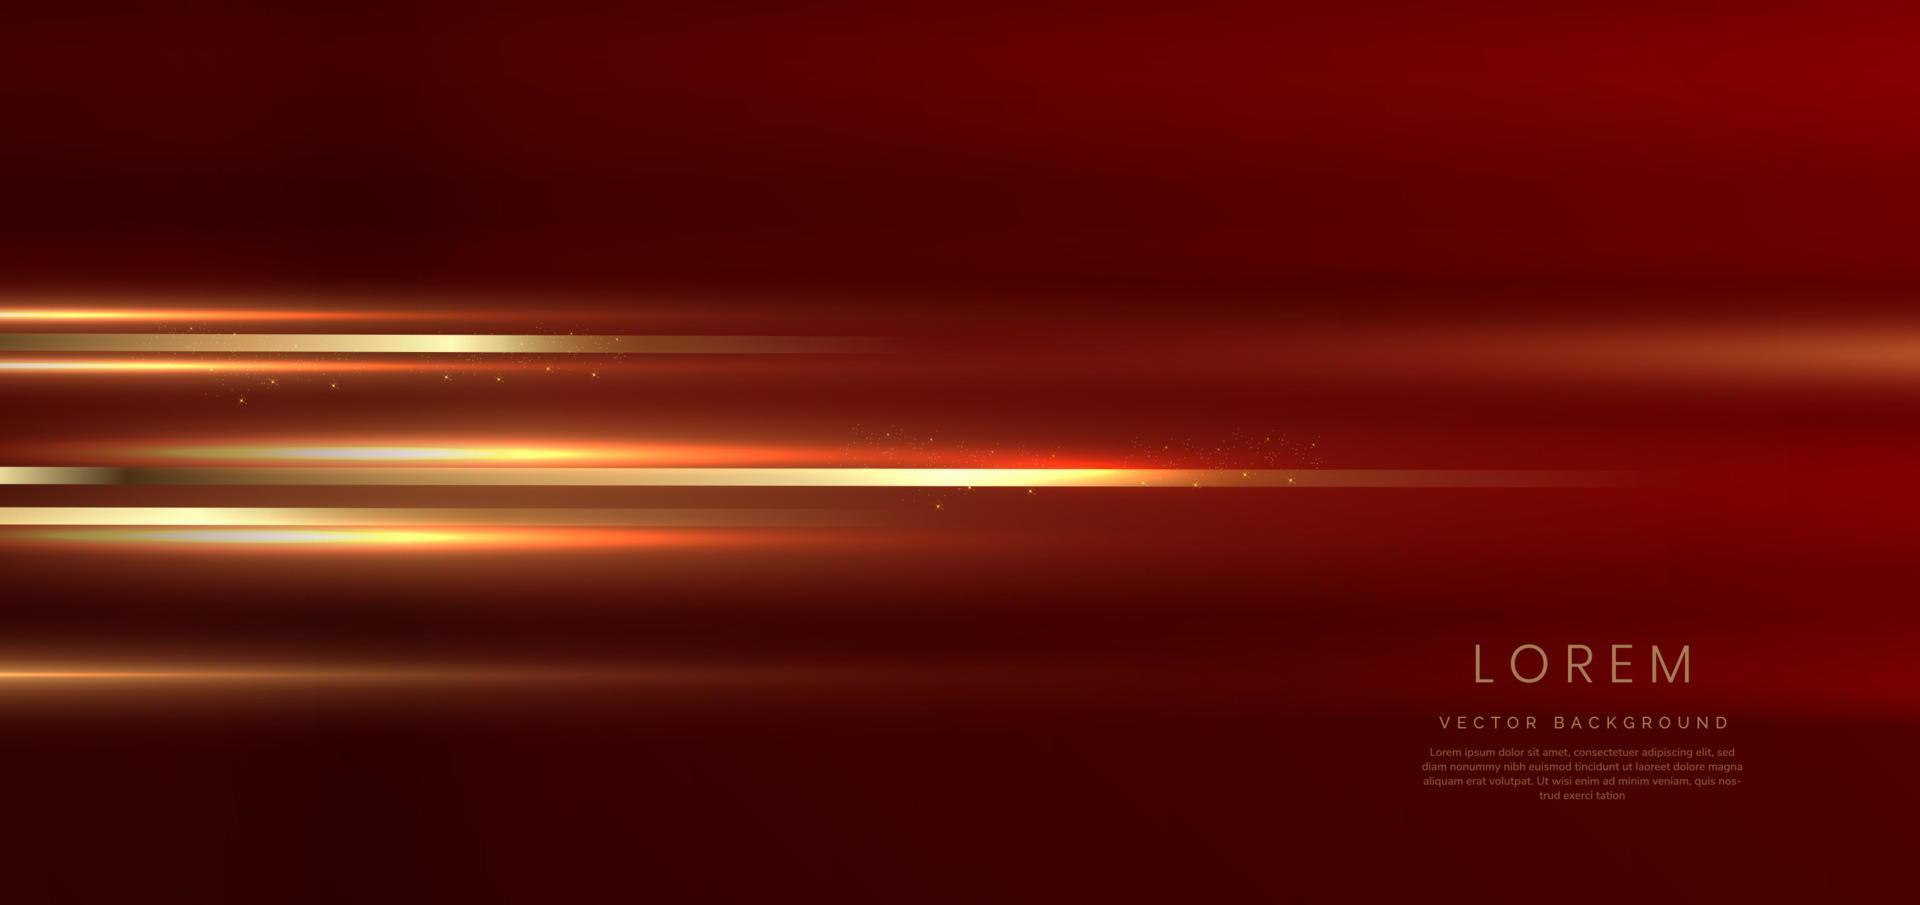 abstrakter hintergrund luxus rot elegant geometrisch horizontal mit goldenem lichteffekt und funkelnd mit kopierraum für text. Vorlage Premium-Award-Design. vektor